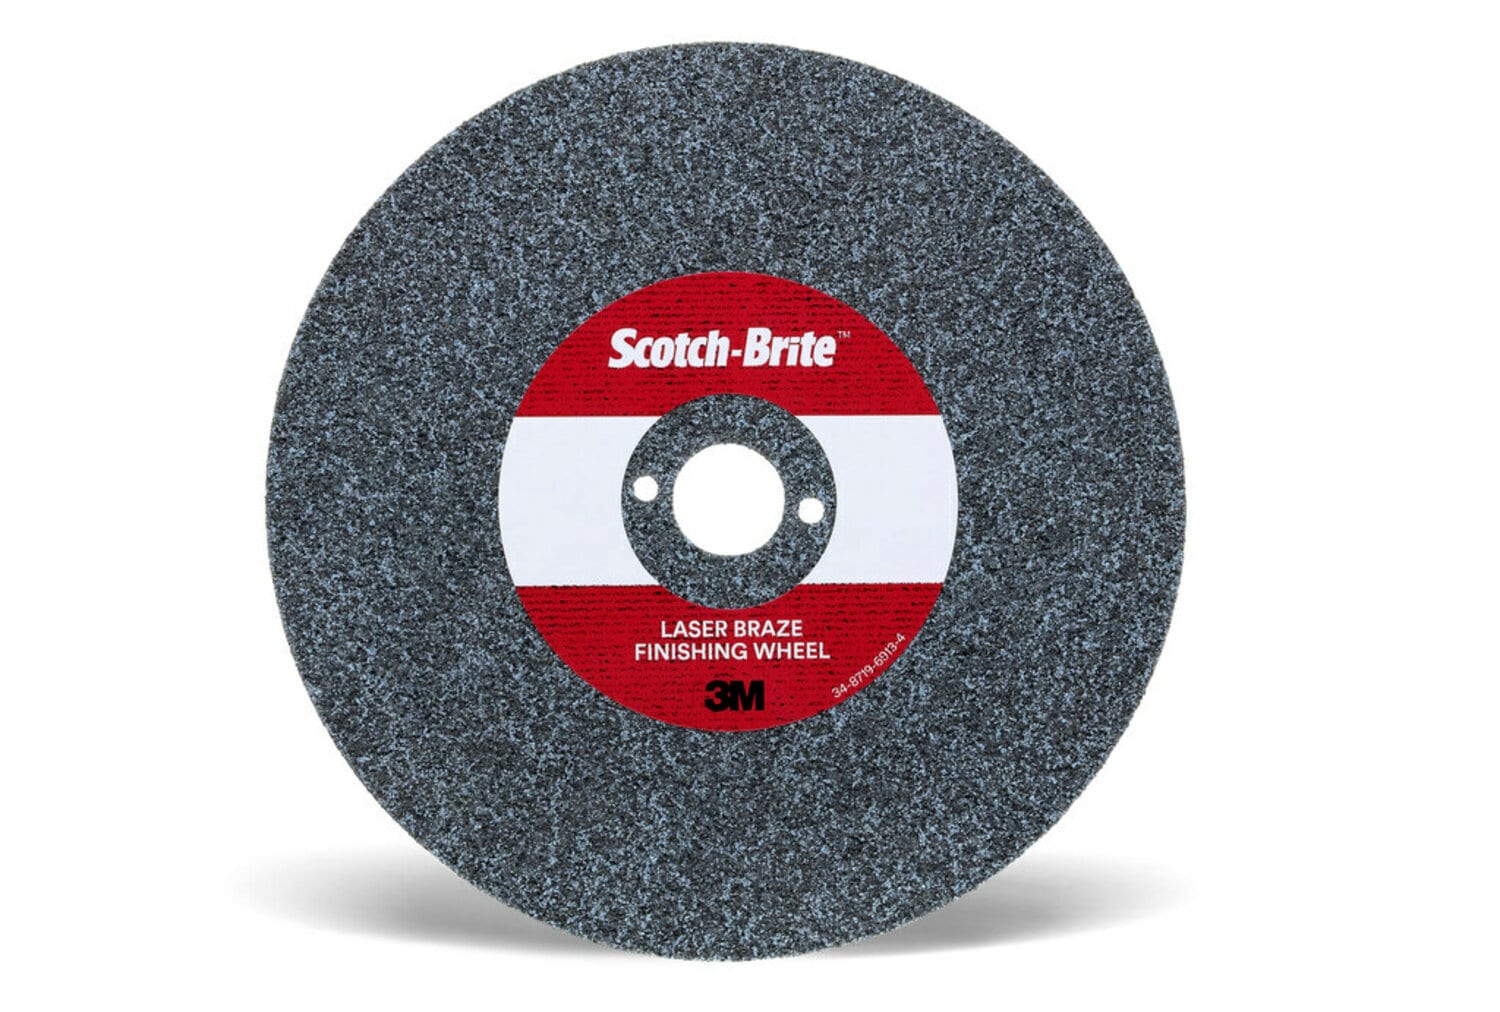 7100115983 - Scotch-Brite Laser Braze Finishing Wheel, 8 in x 3.7mm x 1 in, 10
ea/Case